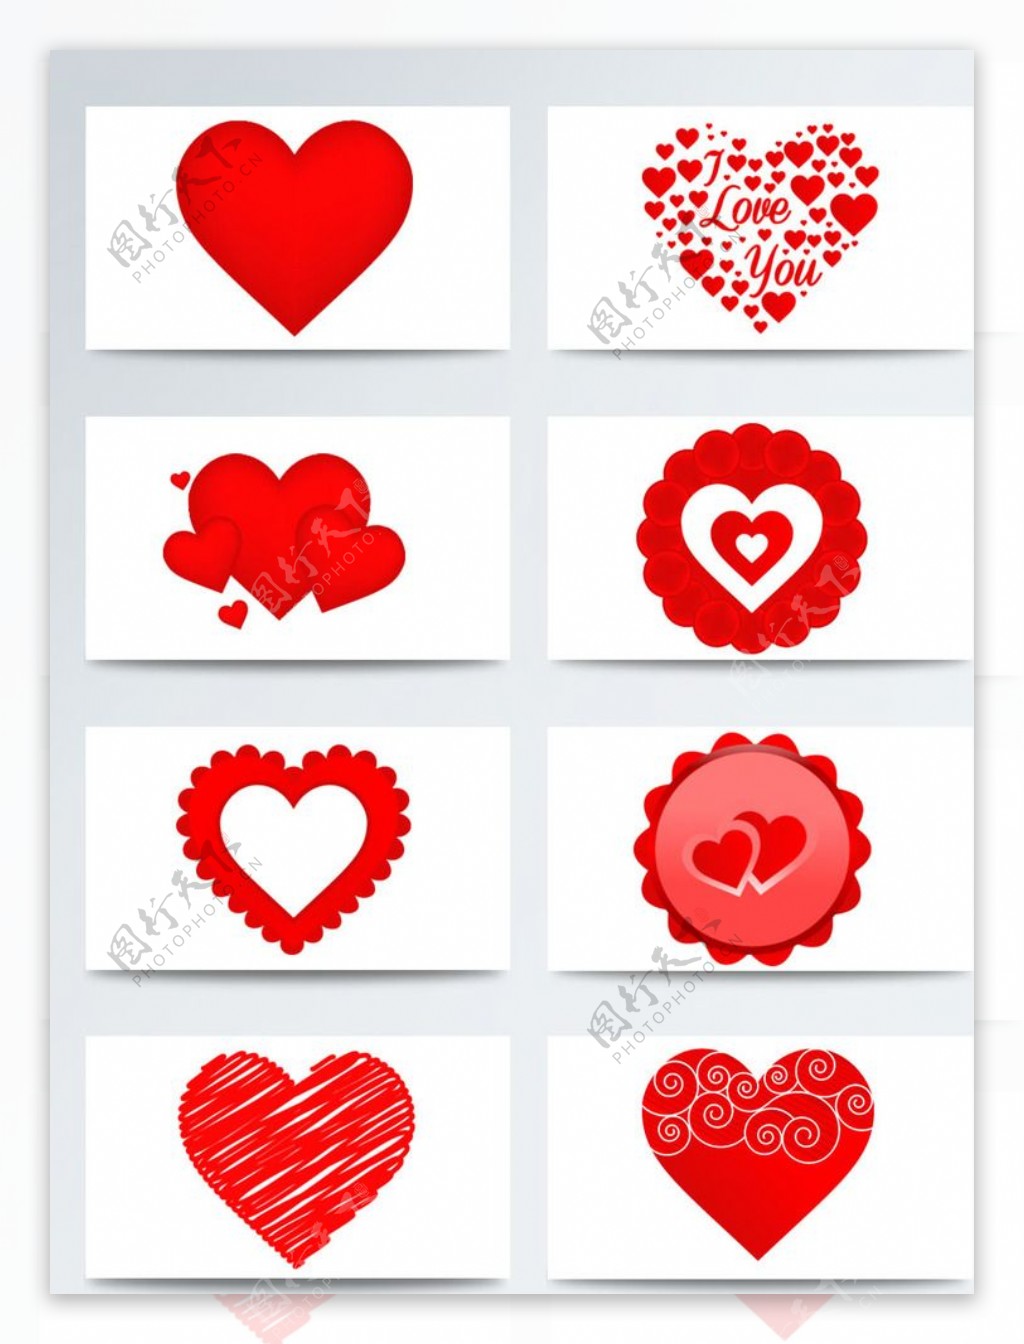 情人节红色心形系列图标素材